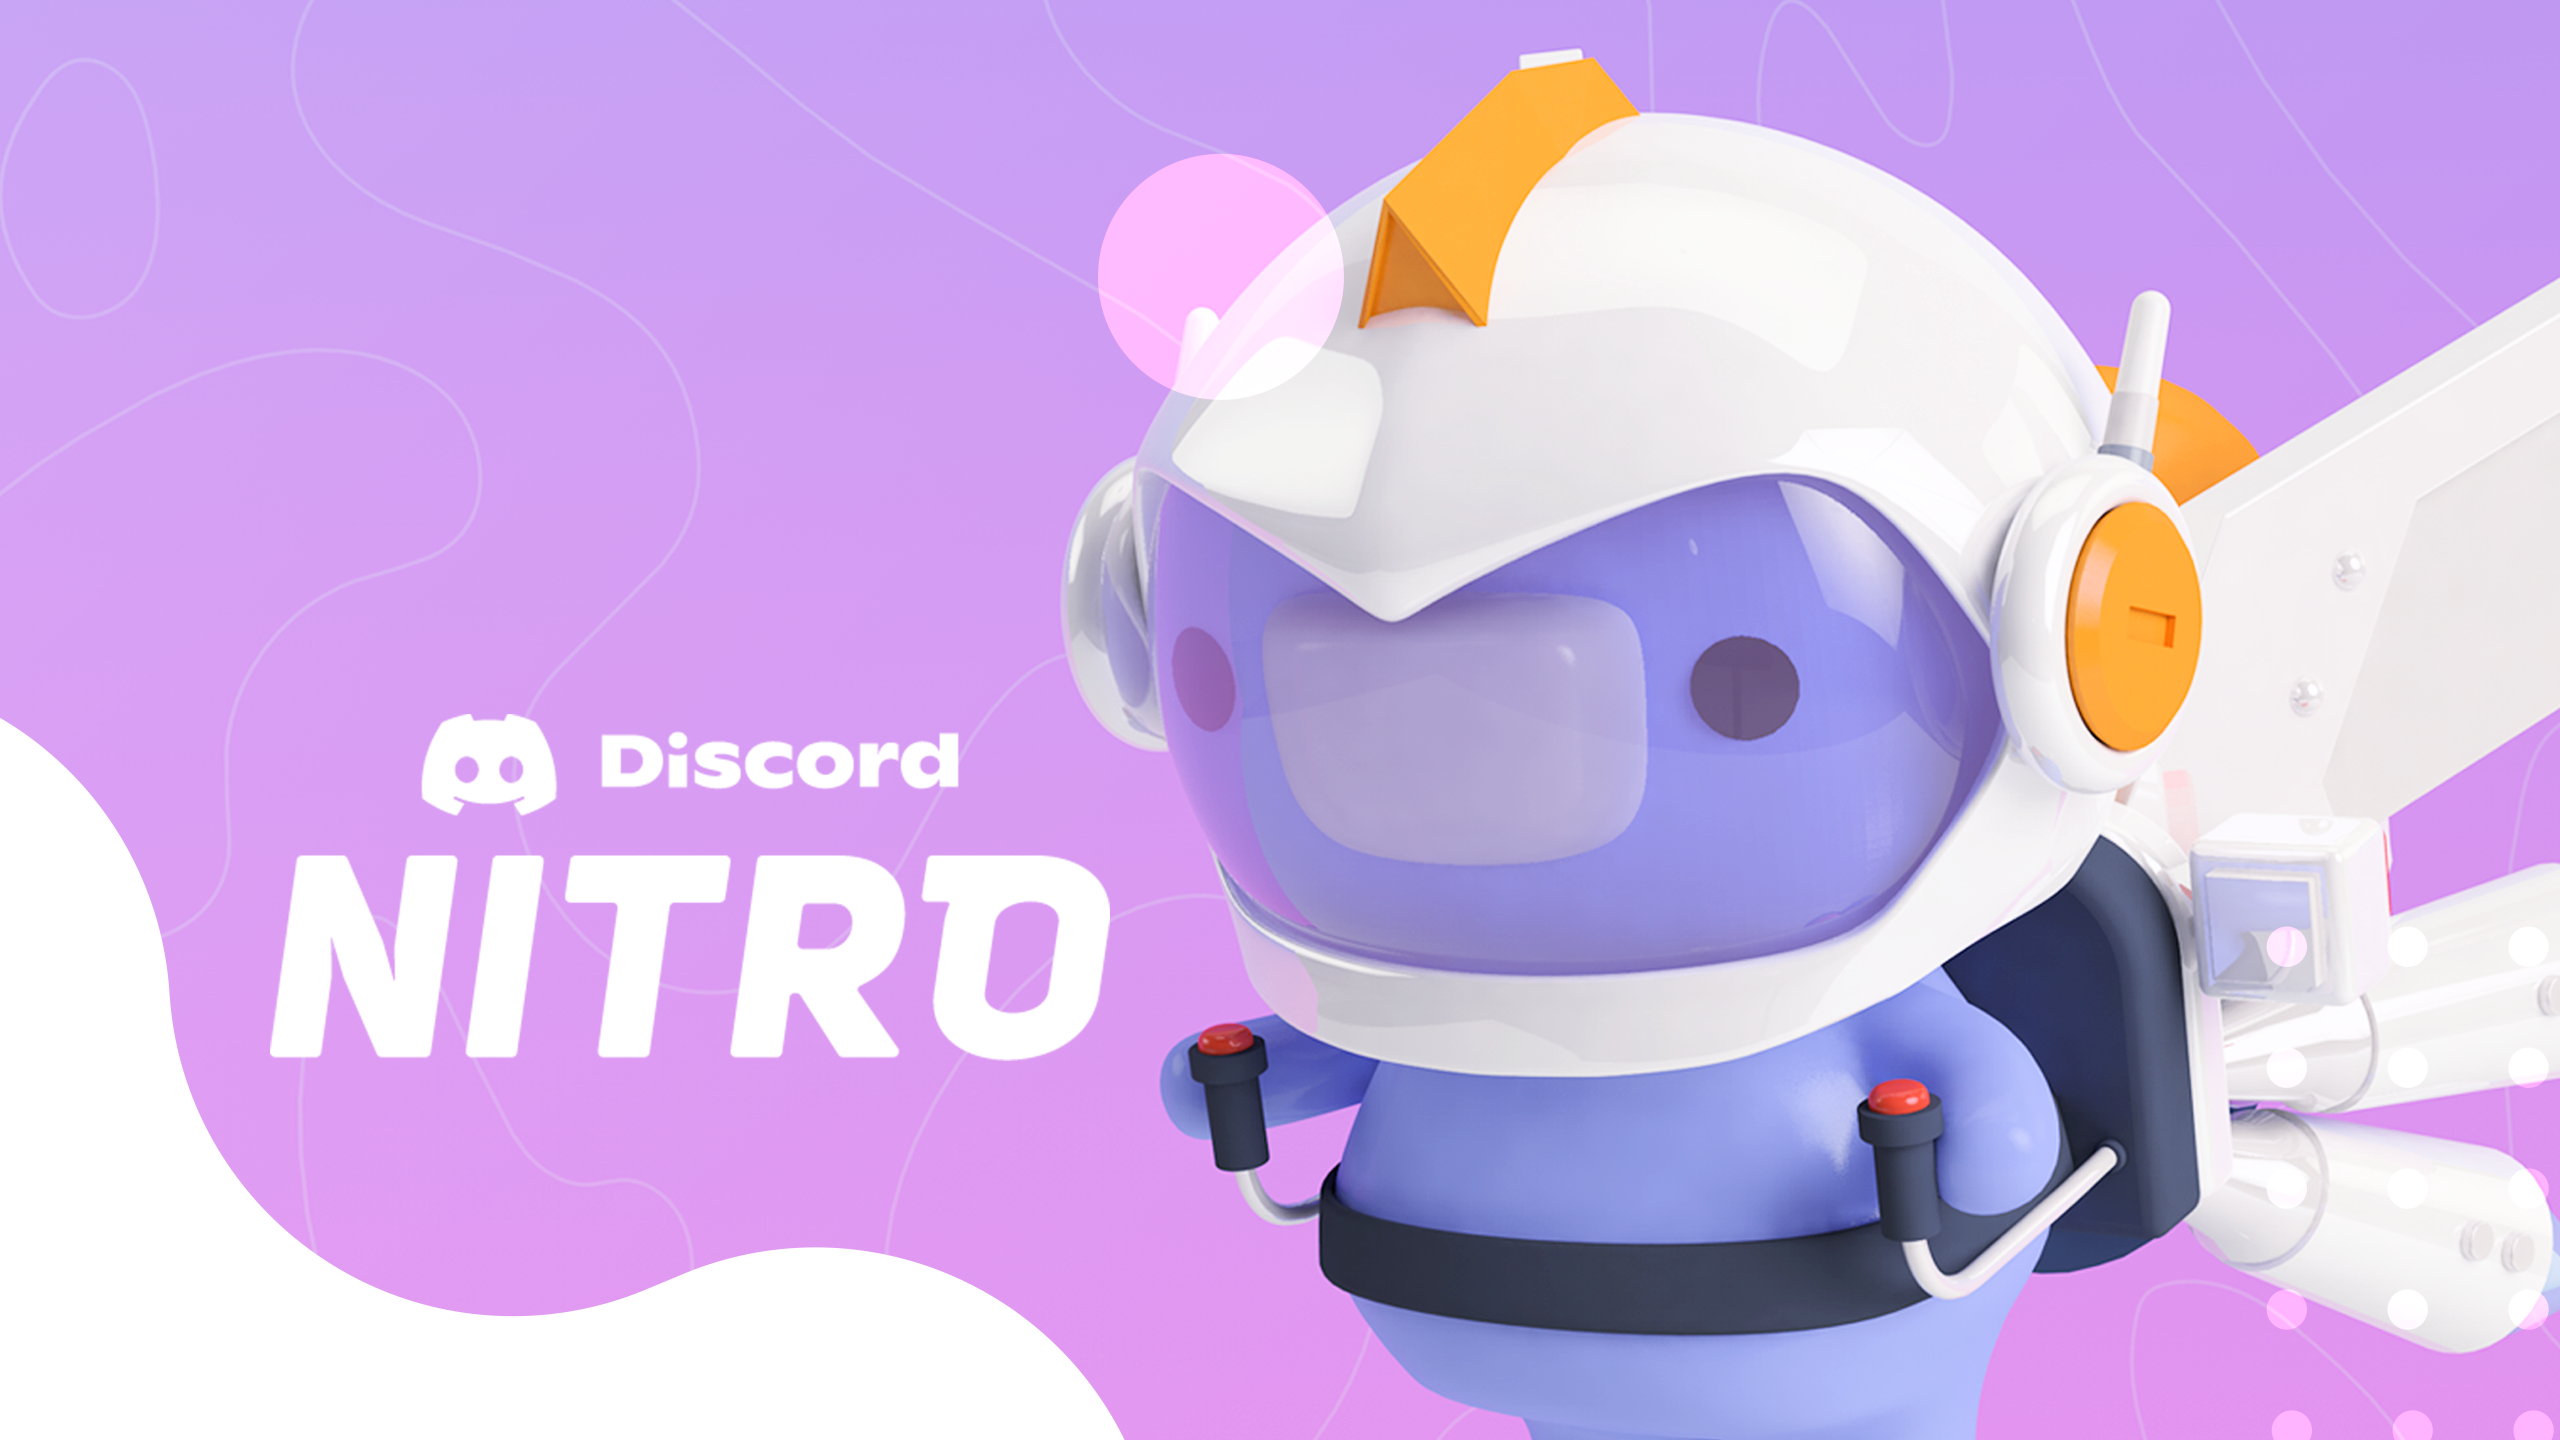 Un mois d’abonnement Nitro offert pour tout achat de Nitro sur Discord !